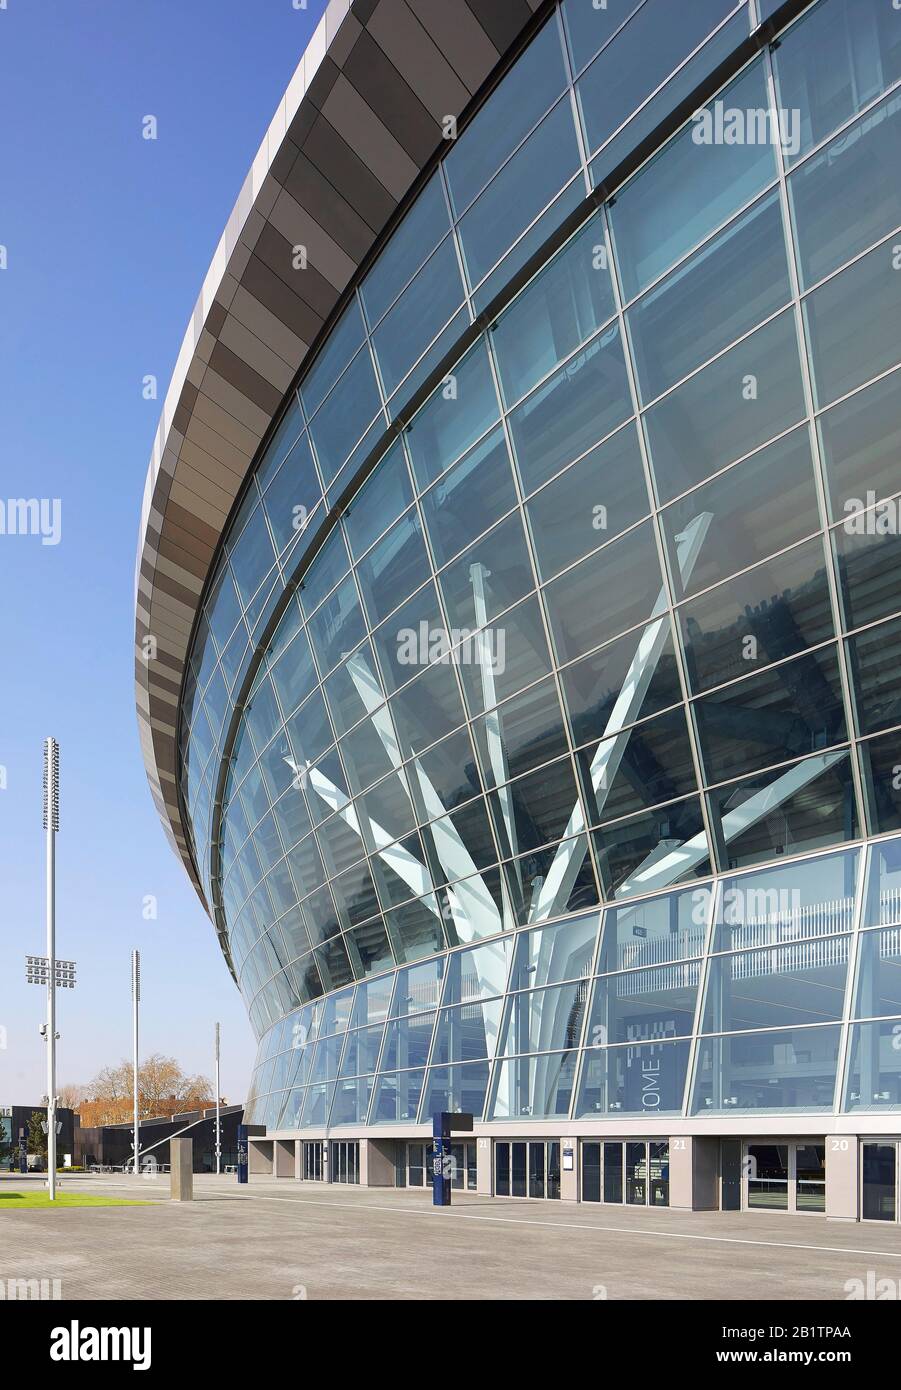 Façade vitrée pleine hauteur à l'entrée. The New Tottenham Hotspur Stadium, Londres, Royaume-Uni. Architecte: Populeux, 2019. Banque D'Images